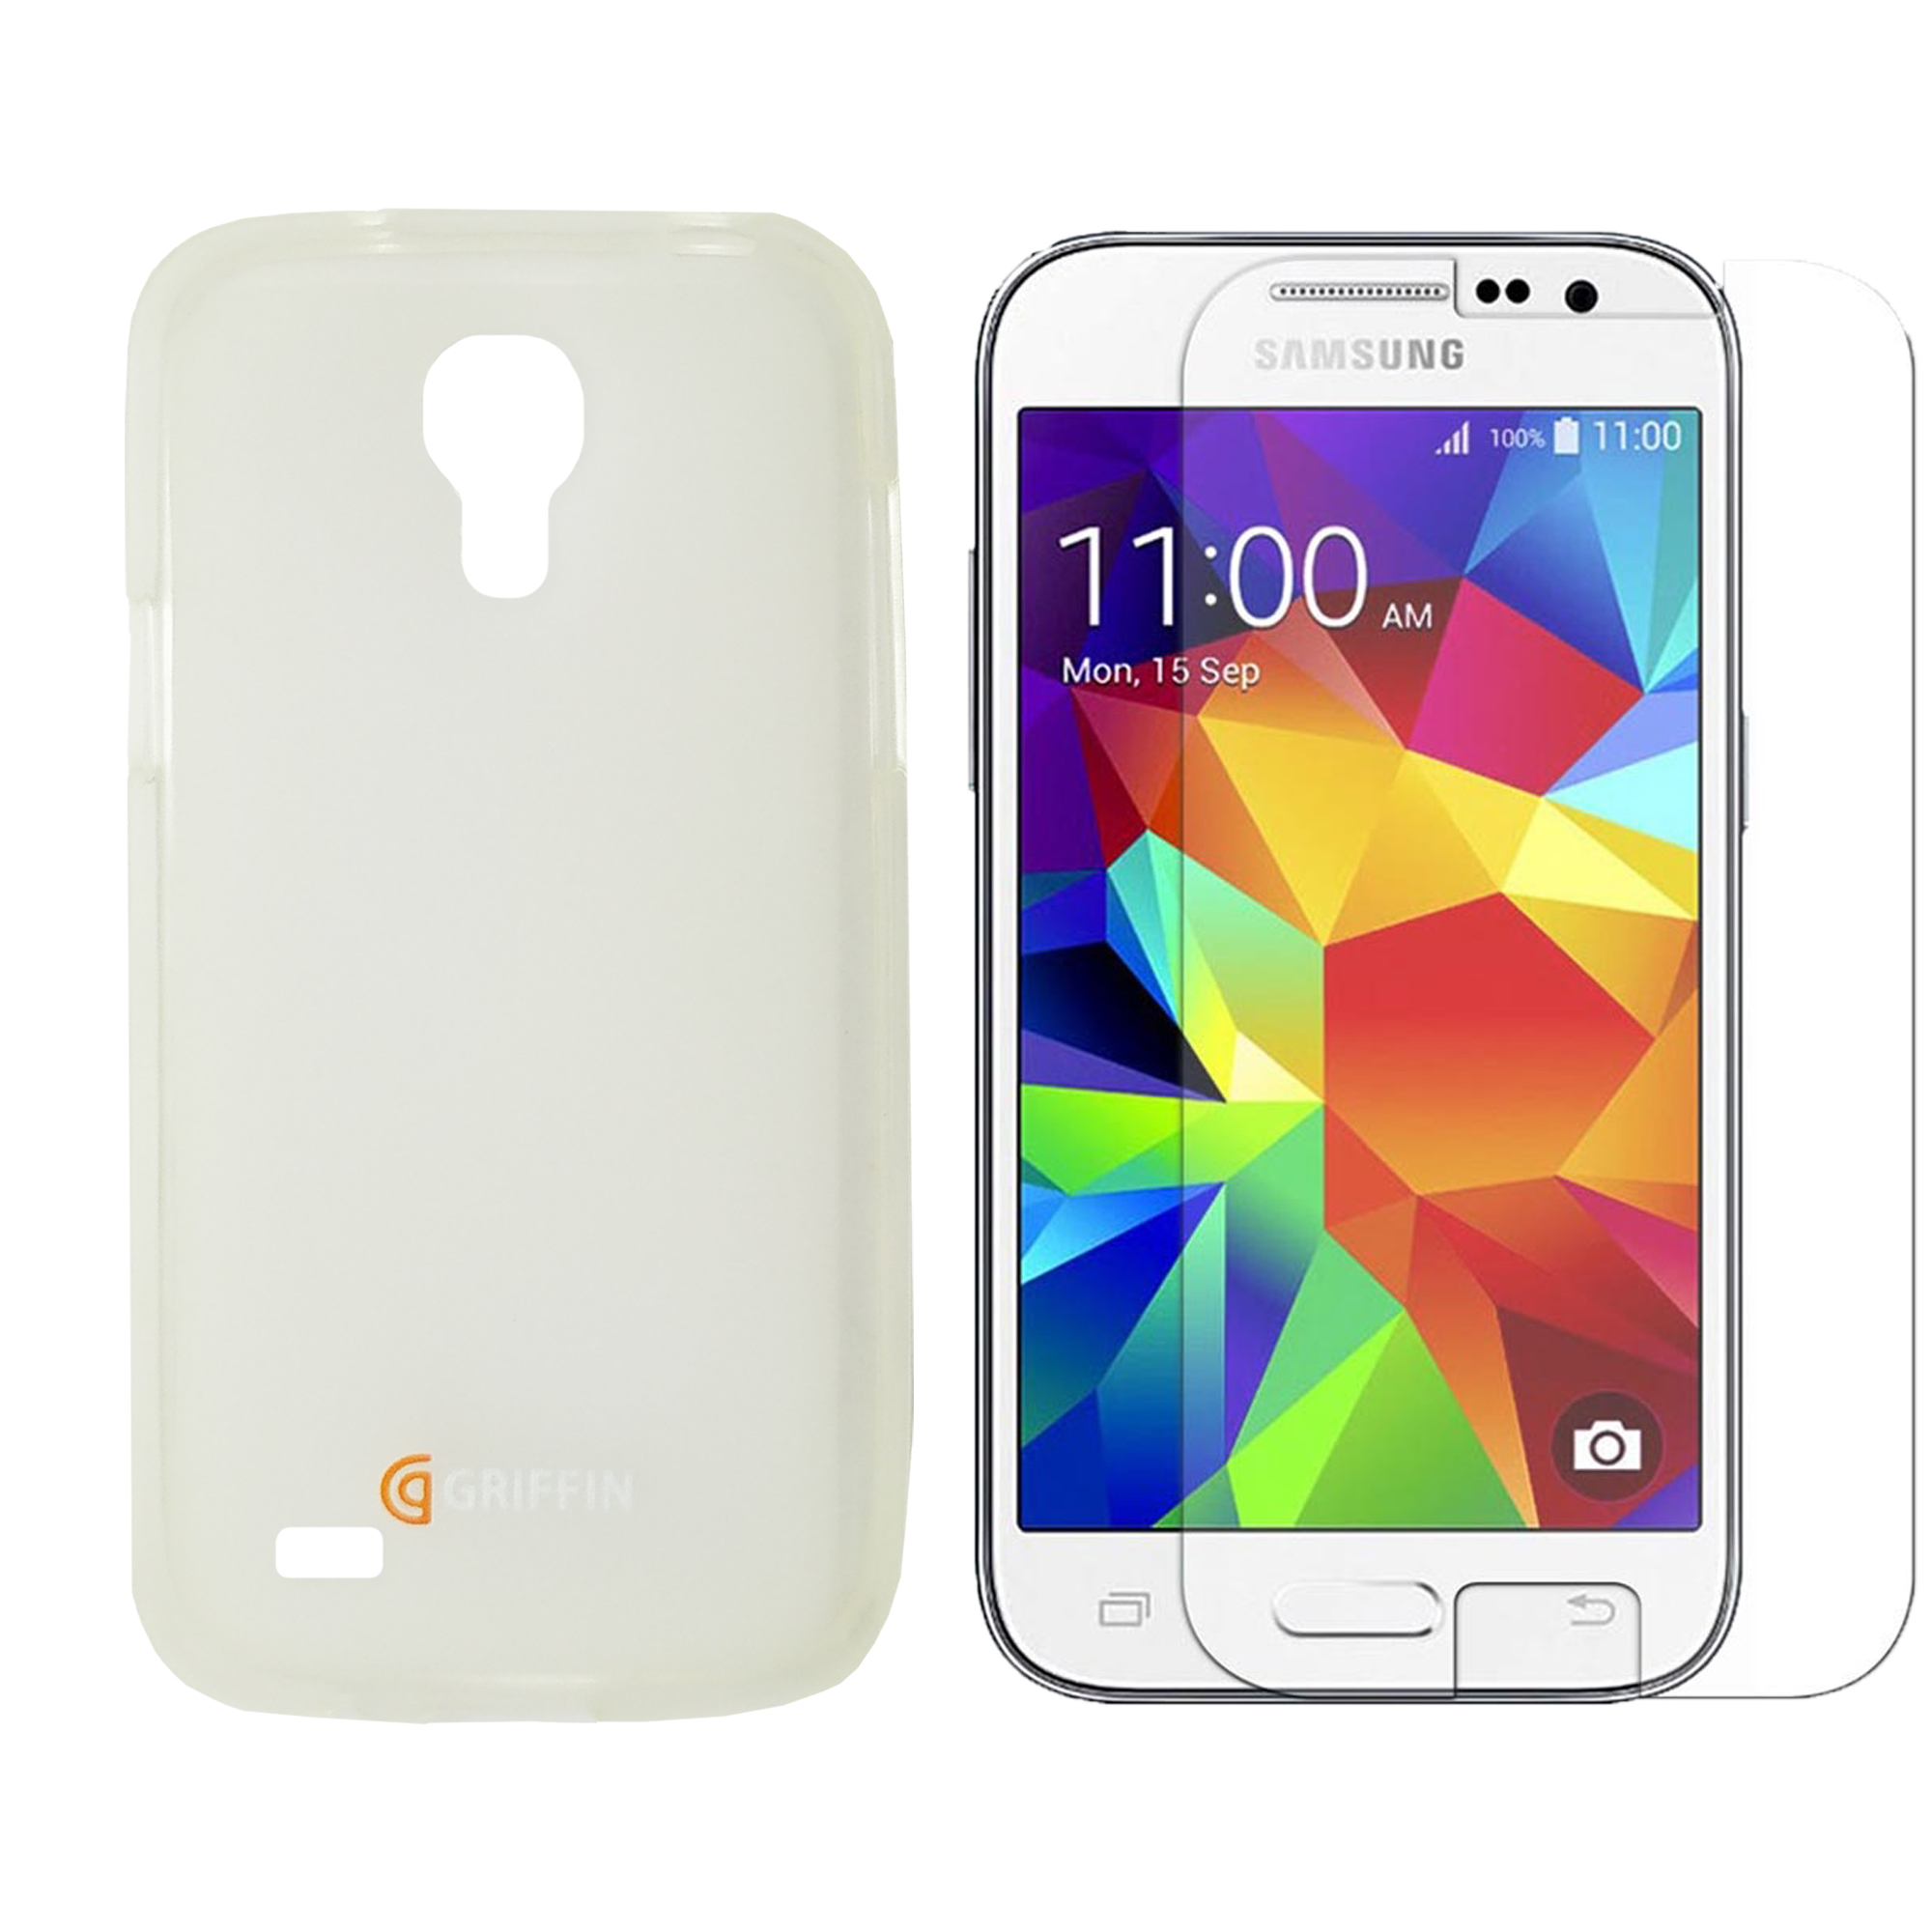 کاور گریفین مدل MC-2883 مناسب برای گوشی موبایل سامسونگ Galaxy S4 Mini / i9190 به همراه محافظ صفحه نمایش